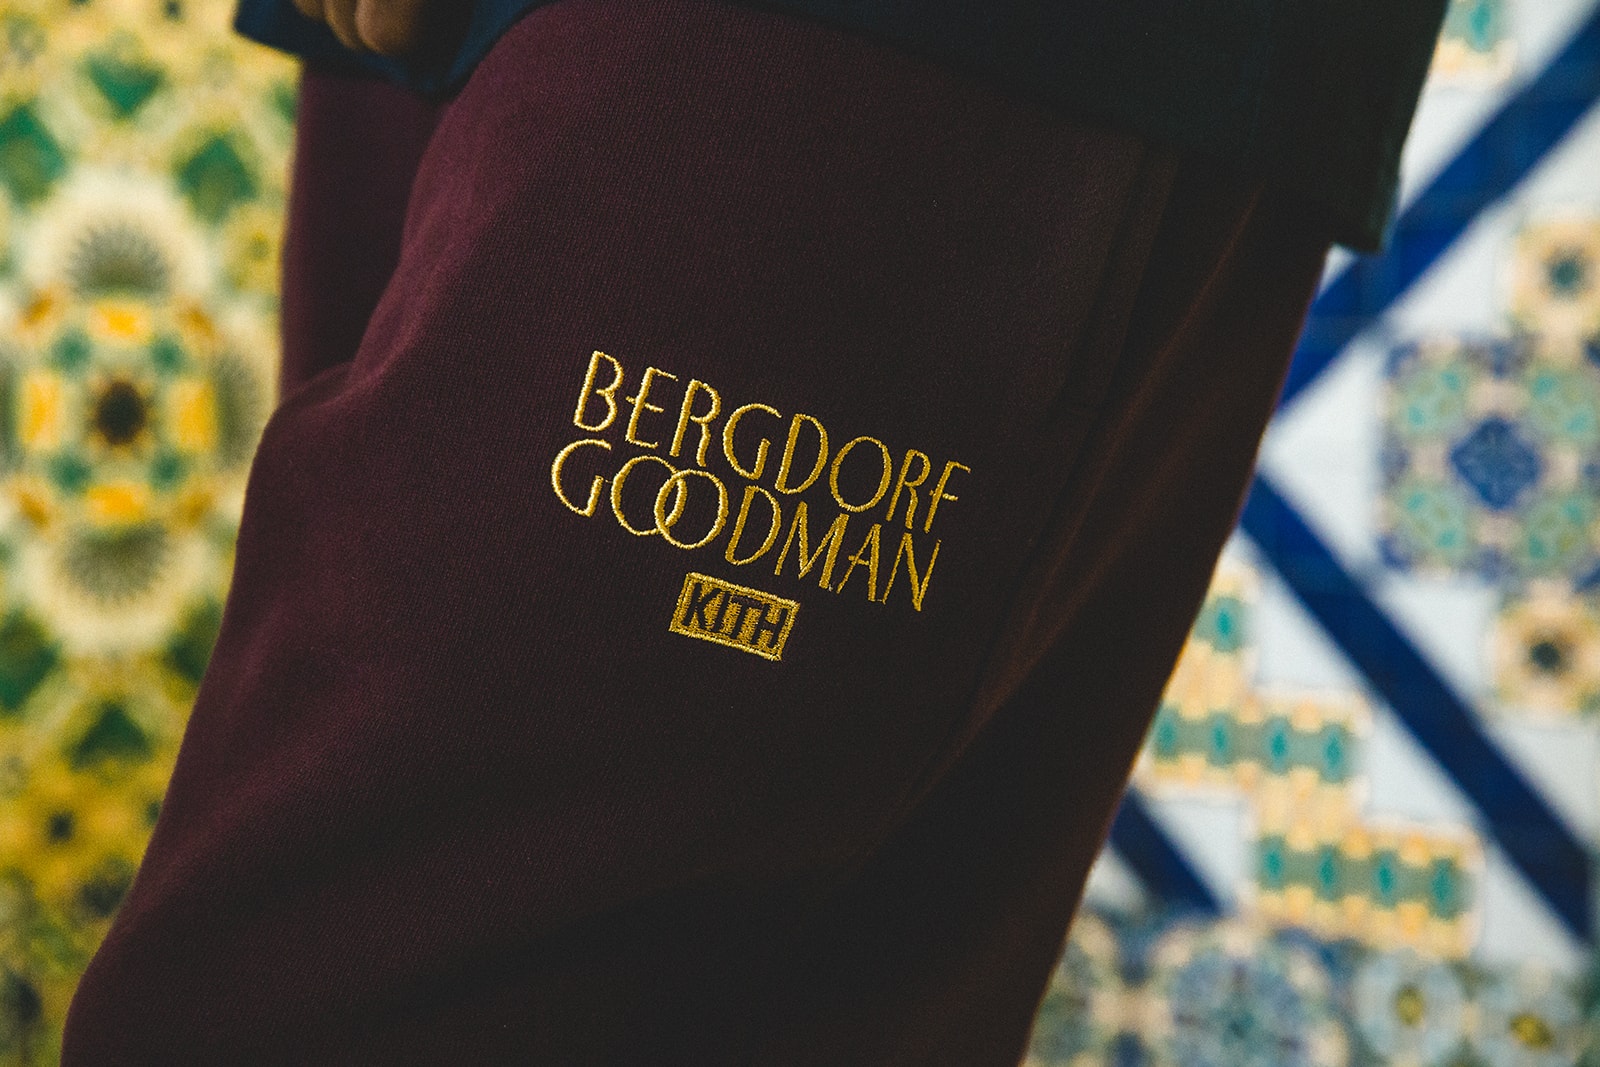 키스 버그도프 굿맨 2017 가을 룩북 kith bergdorf goodman fall lookbook